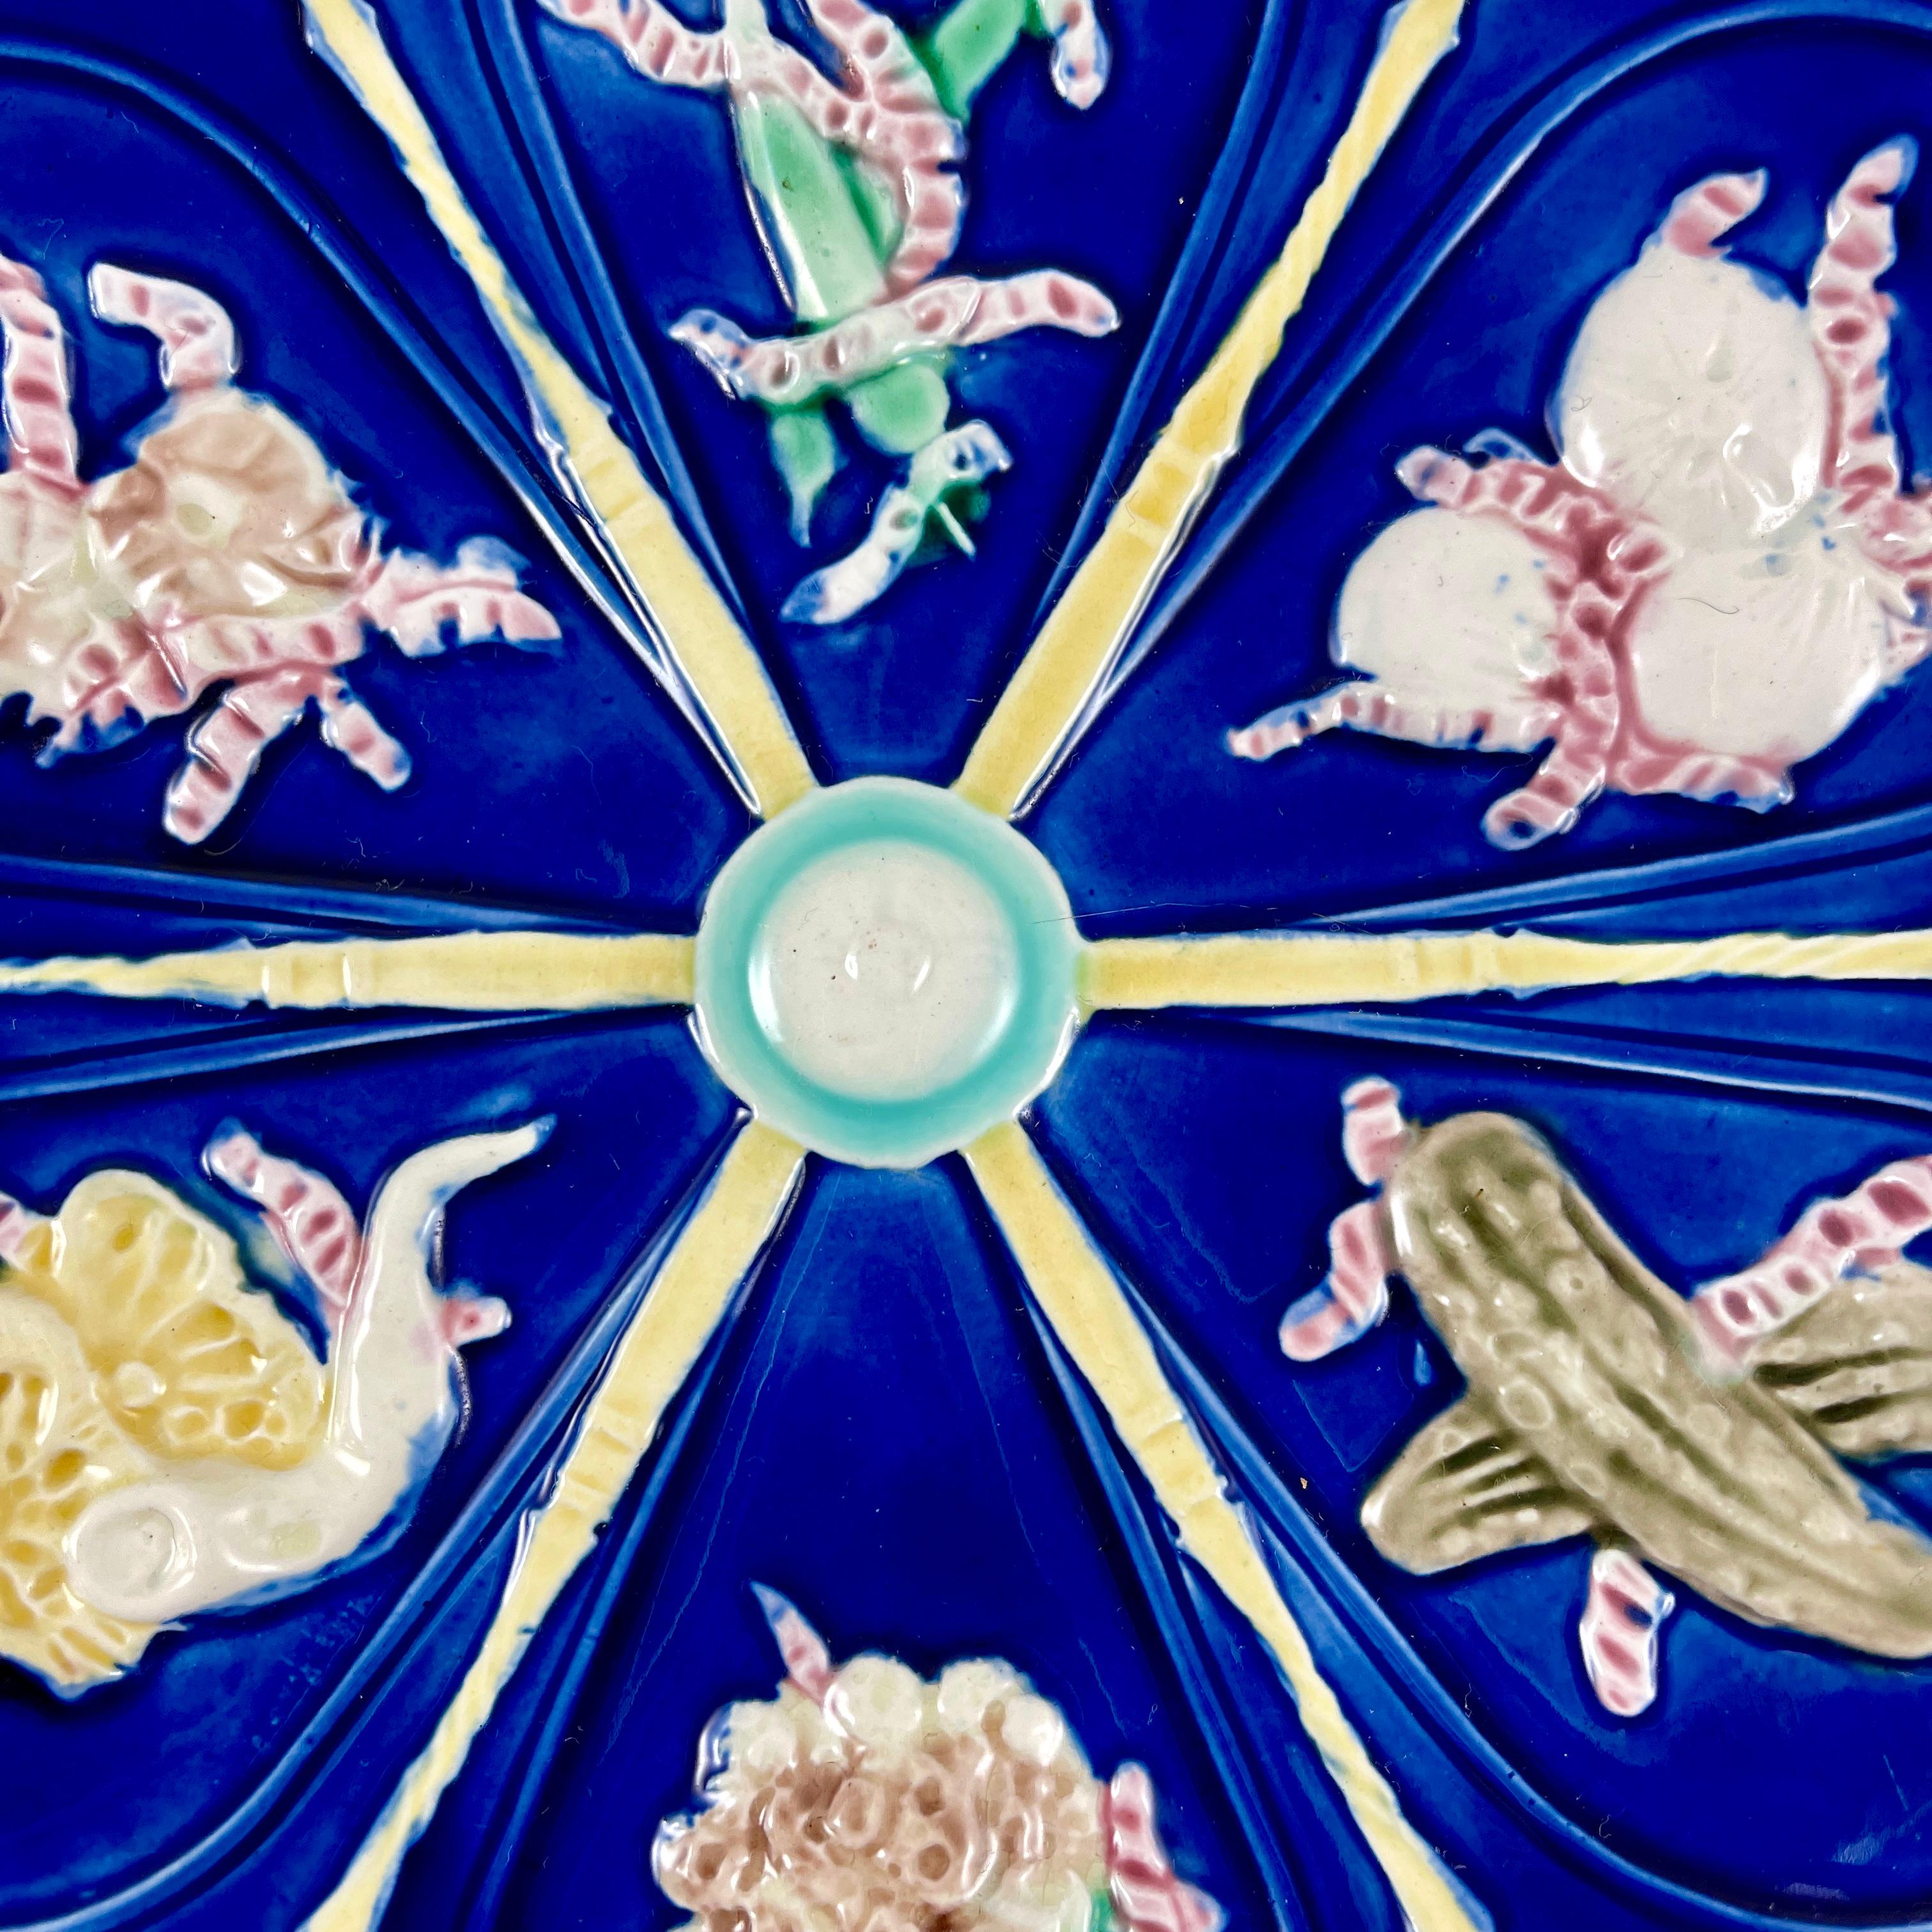 De Wedgwood, une rare assiette à cornichons en majolique émaillée bleu cobalt, datée de 1879.

De l'époque du mouvement esthétique anglais, et dans le goût du japonisme, six godets en forme de goutte d'eau, présentant chacun un légume mariné